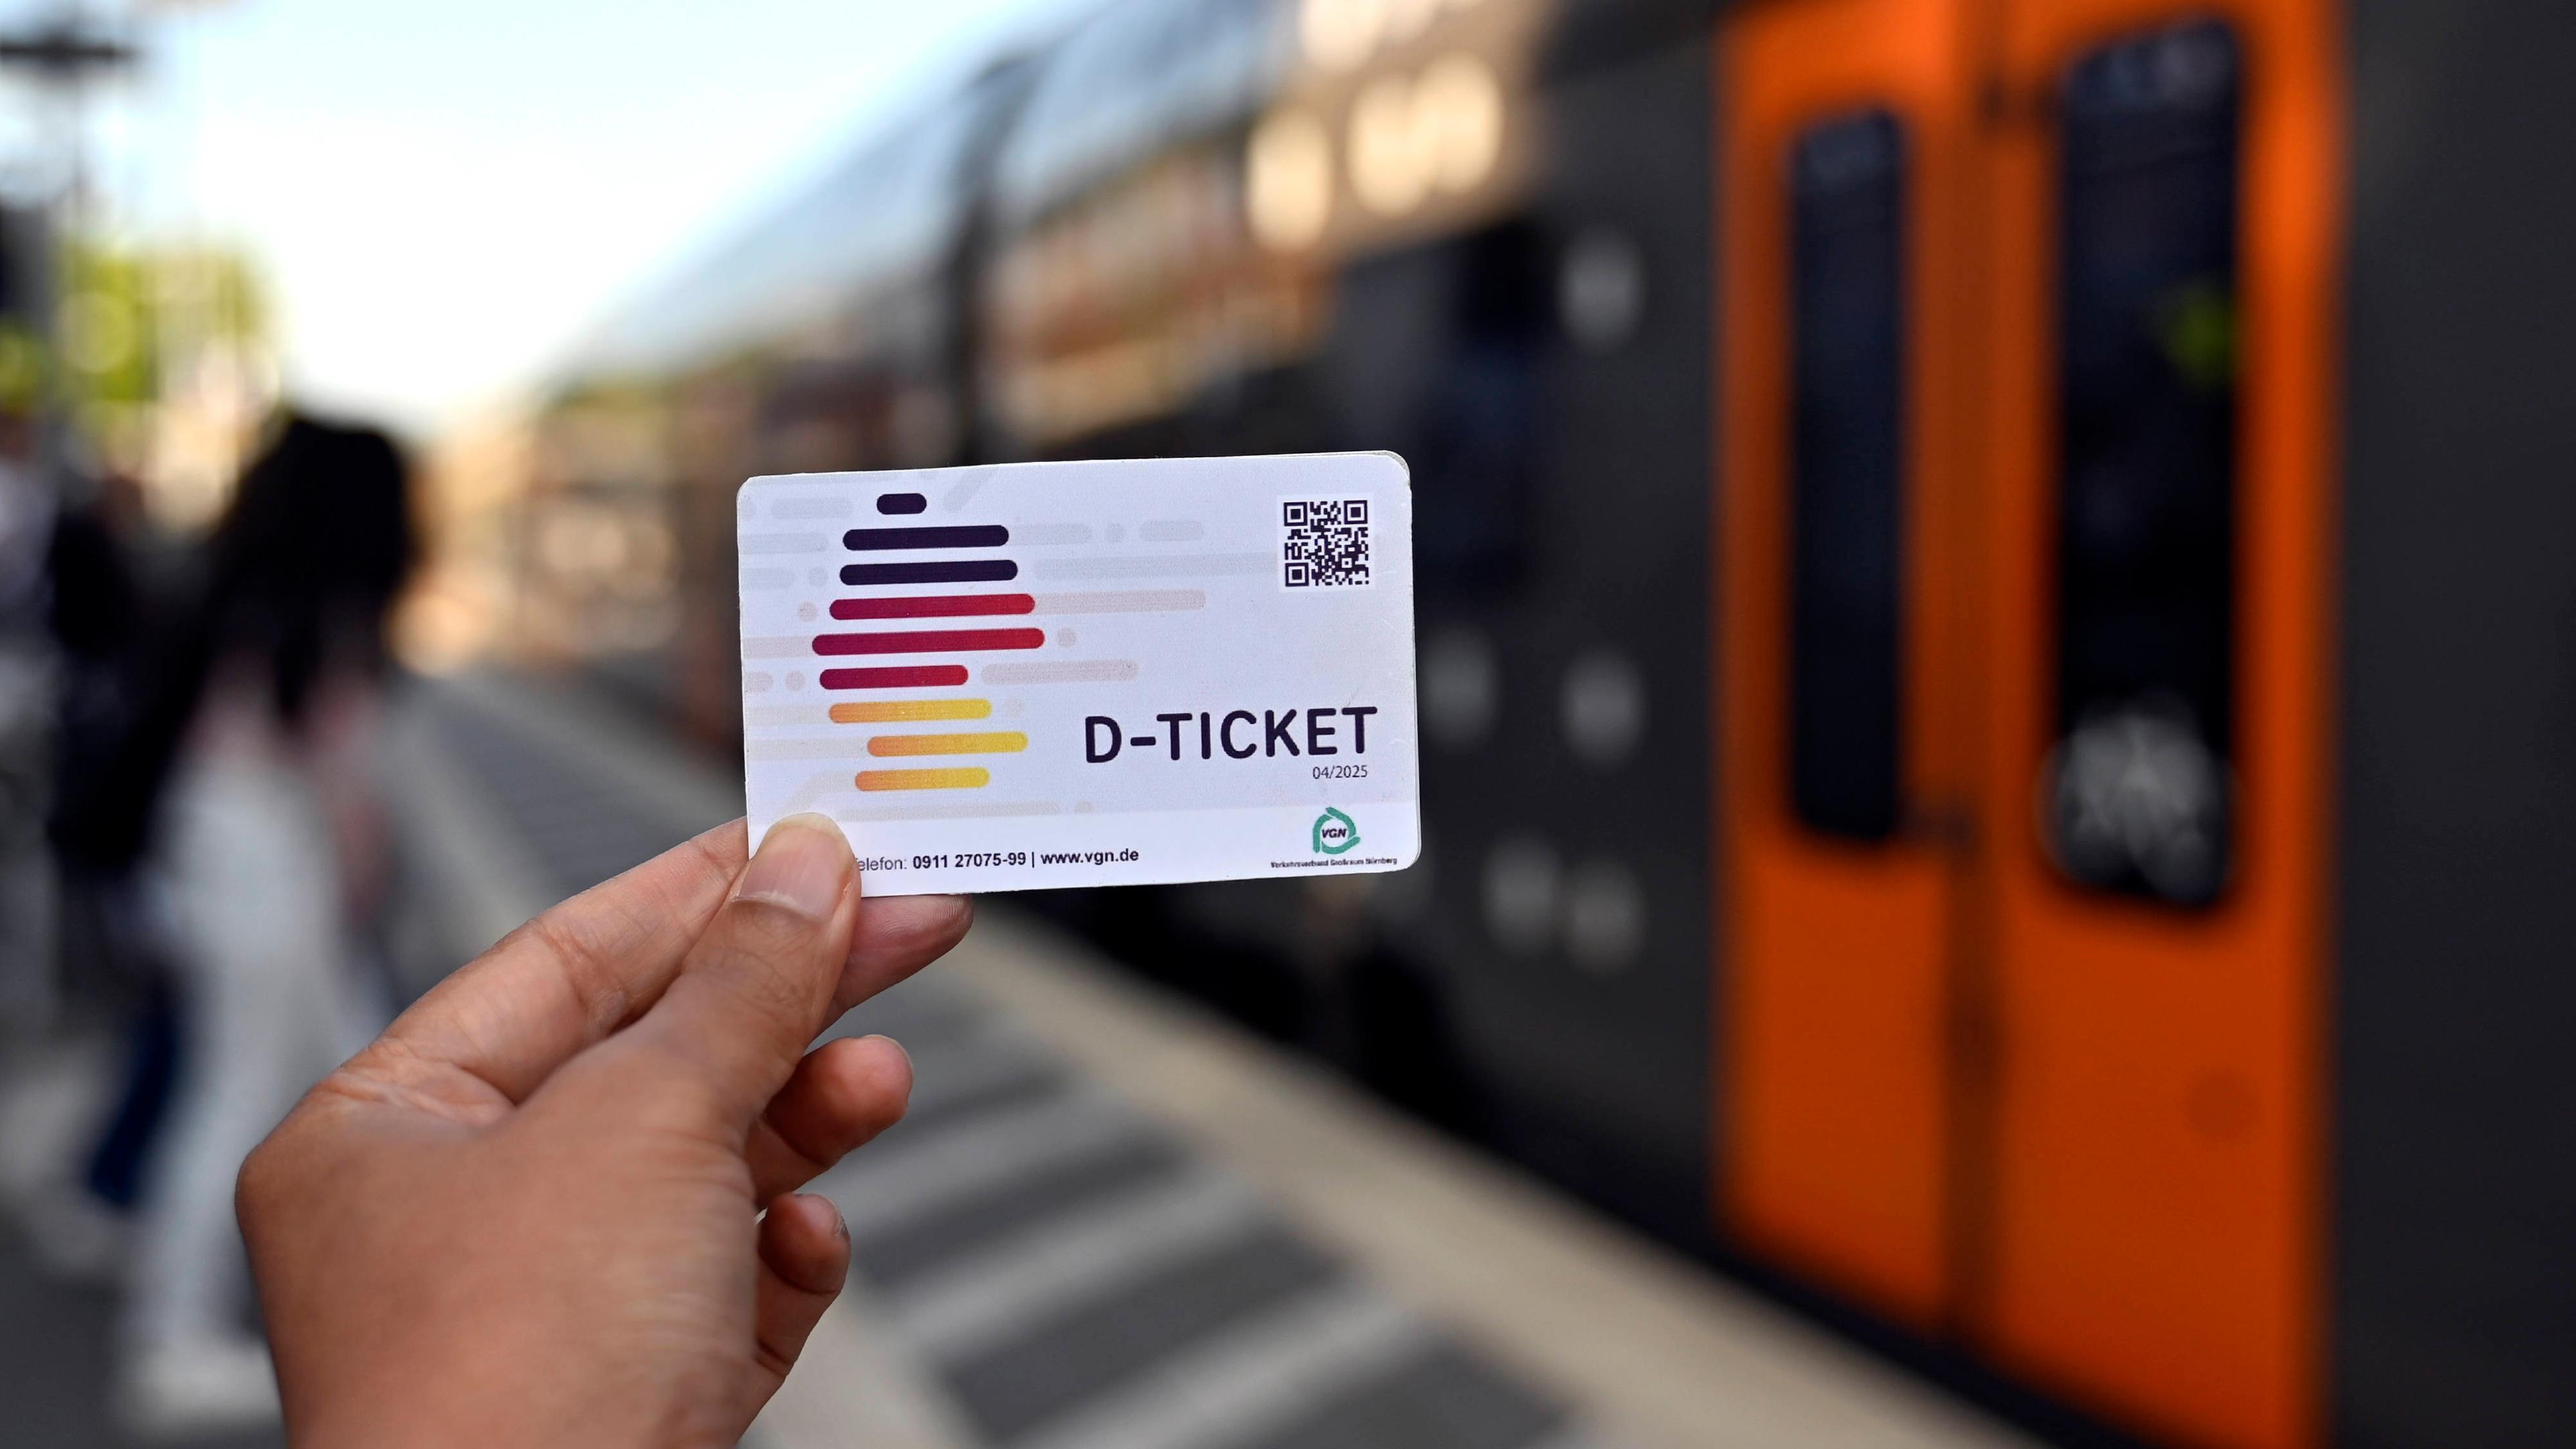 Mit dem Deutschland-Ticket können Kunden der Deutschen Bahn seit dem 1. Mai 2023 für nur 49 Euro pro Monat in allen Verkehrsmitteln des öffentlichen Nahverkehrs reisen.